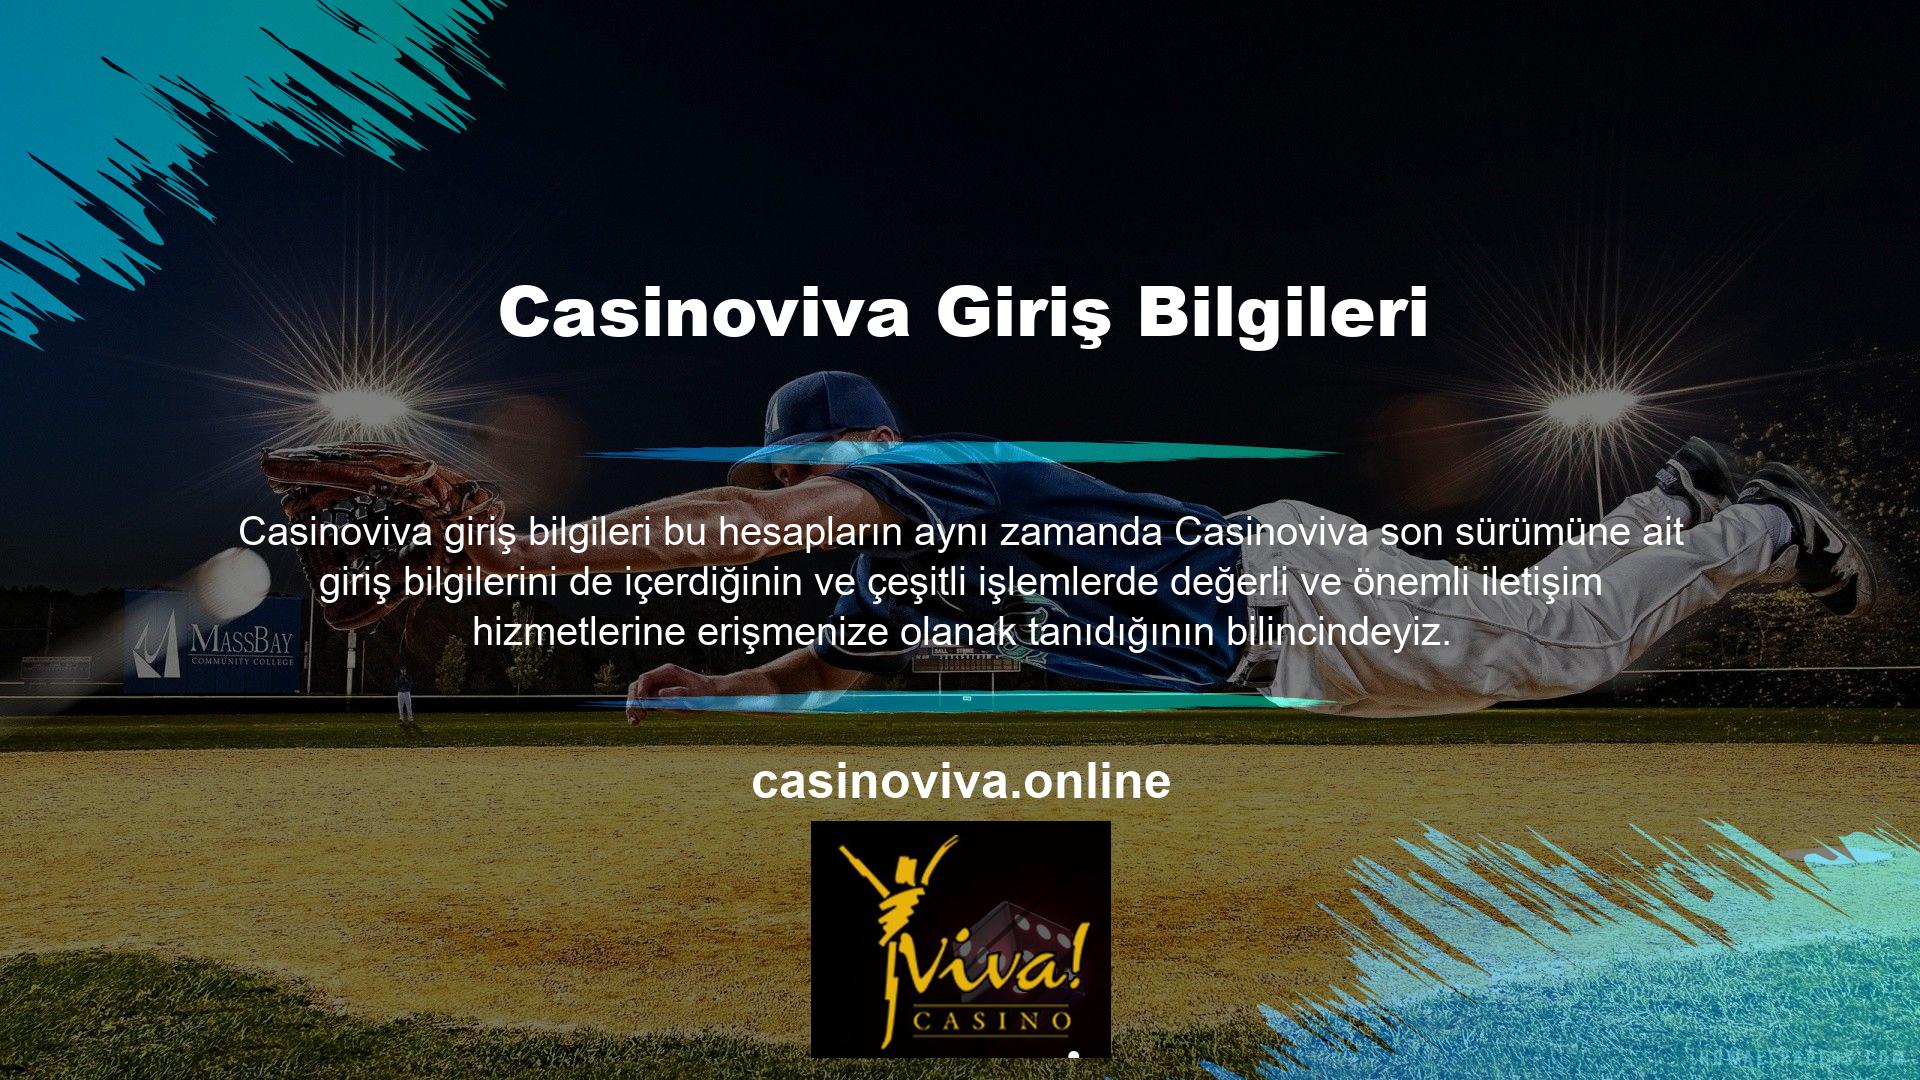 Casinoviva web sitesinin canlı destek ekibi, kullanıcıların etkin iletişim hizmeti almasını garanti altına almak açısından büyük önem taşımaktadır